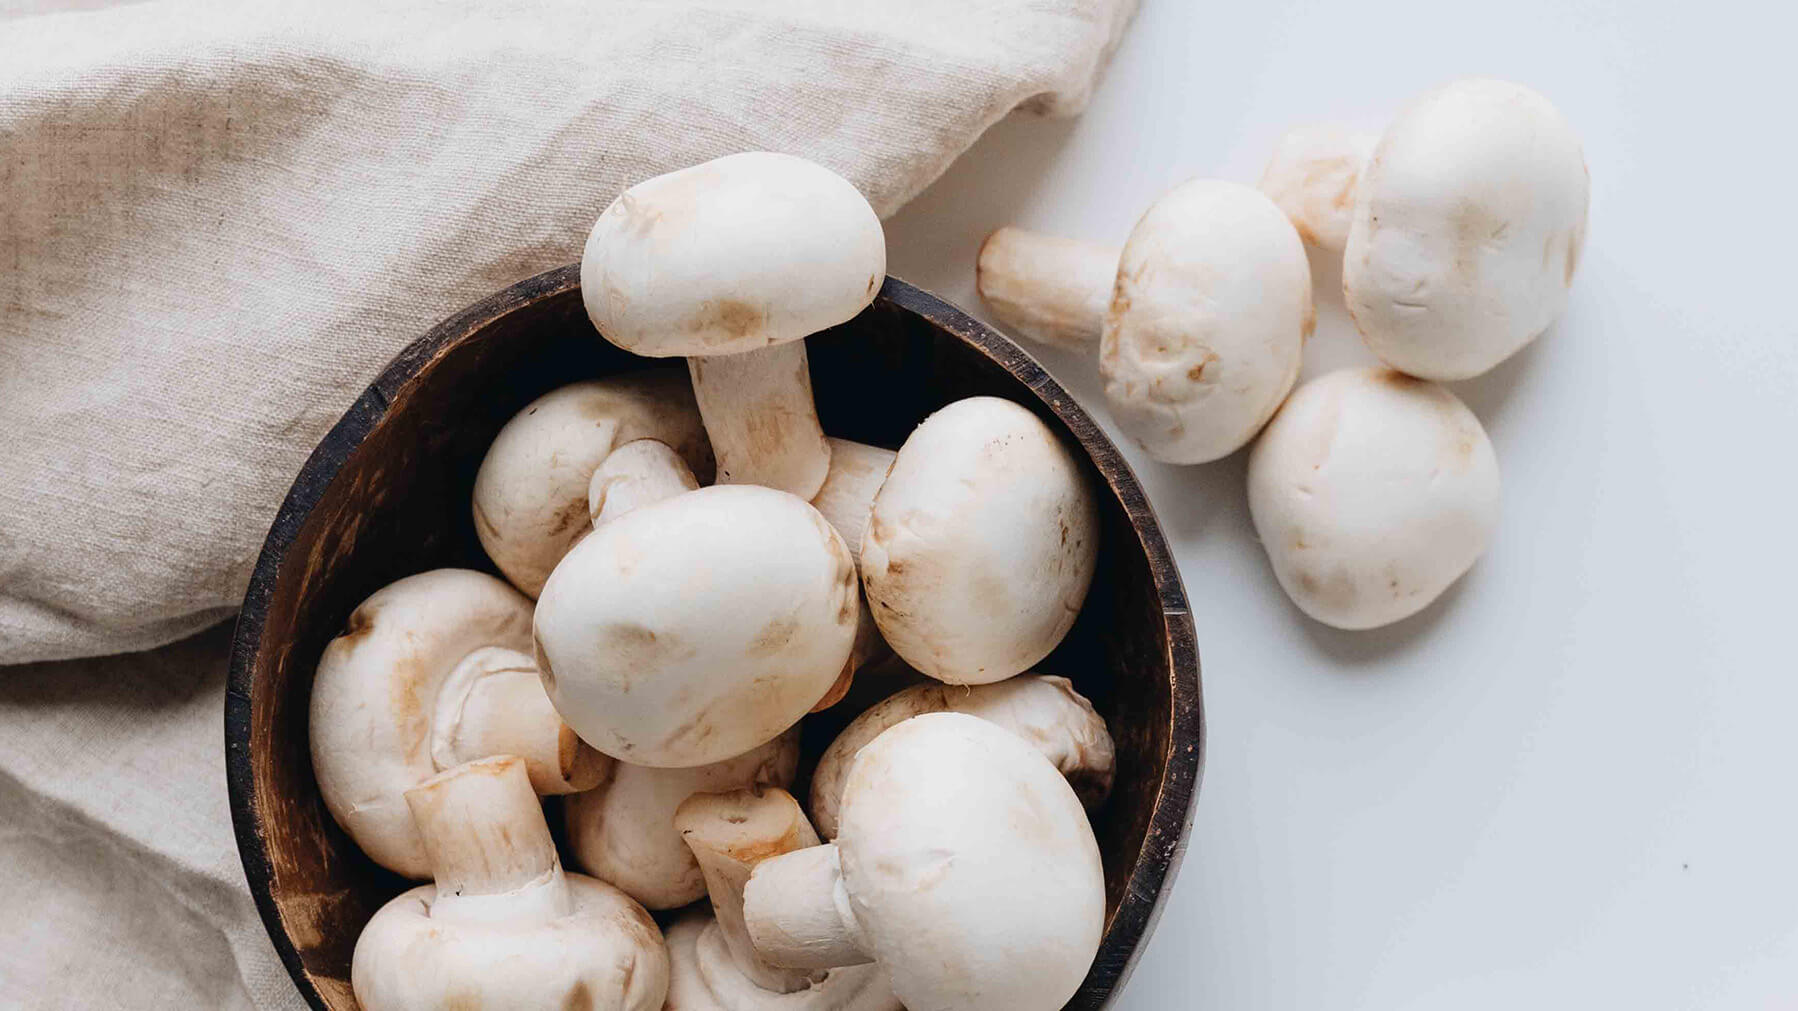 Hillbilly Mushrooms: A Hidden Delight in Wild